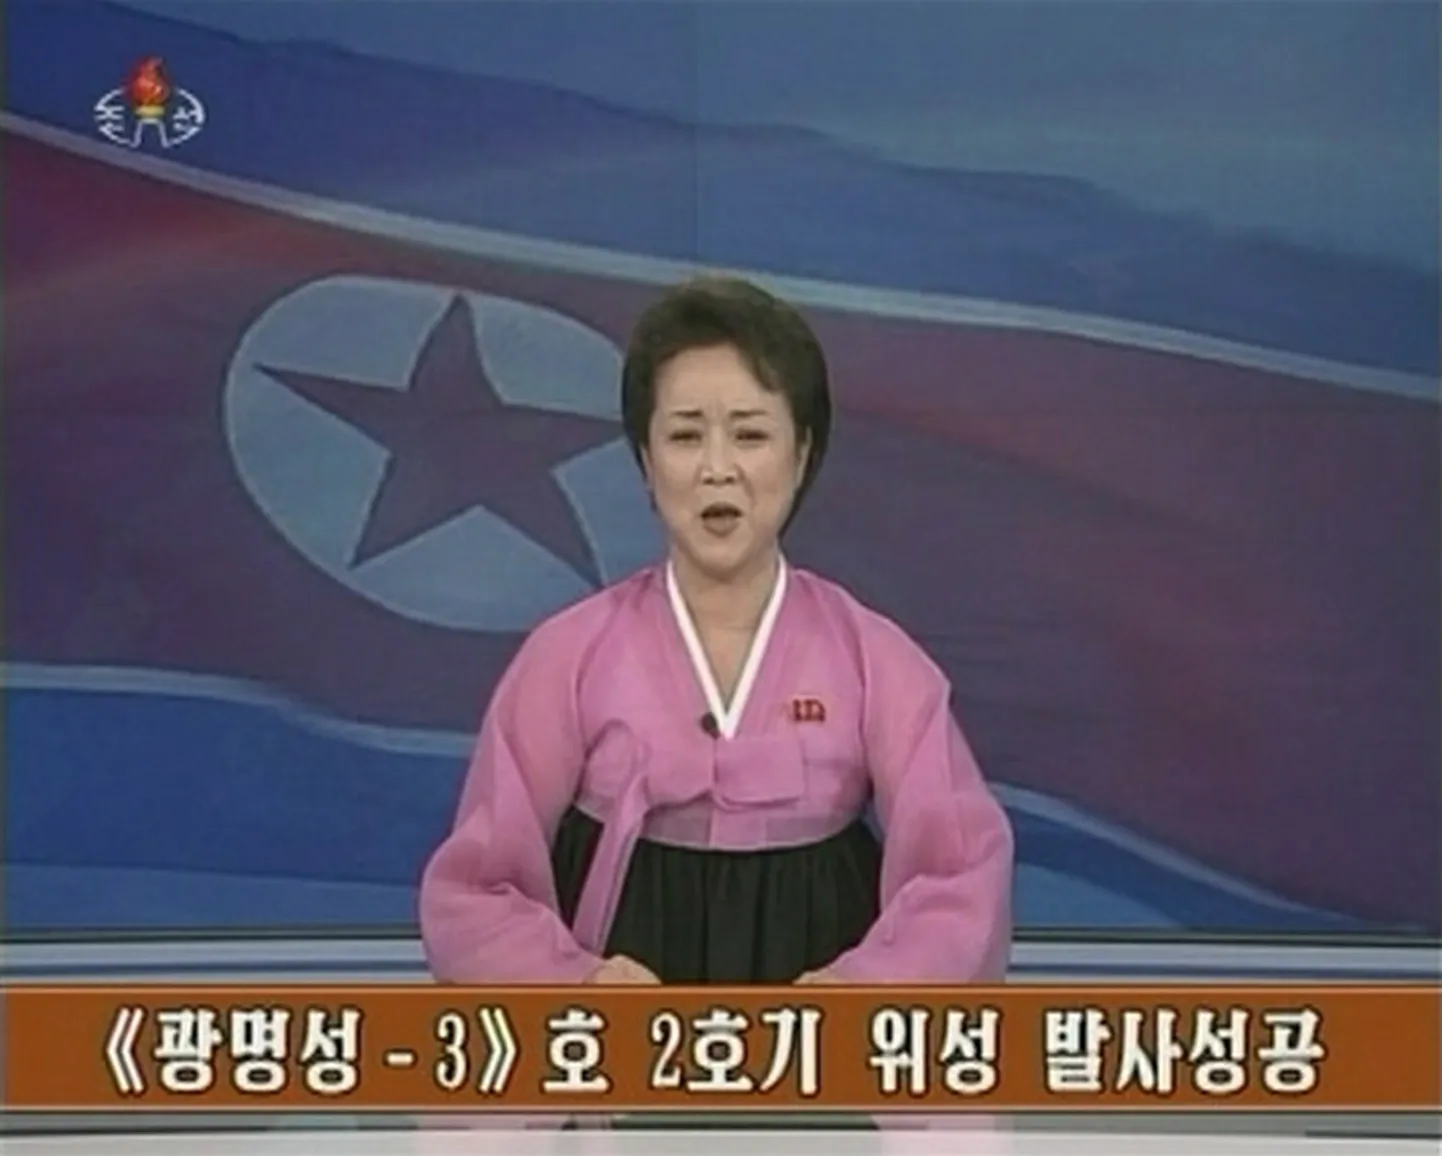 Põhja-Korea telediktor teatab järjekordsest raketikatsetusest. Foto on illustreeriv.